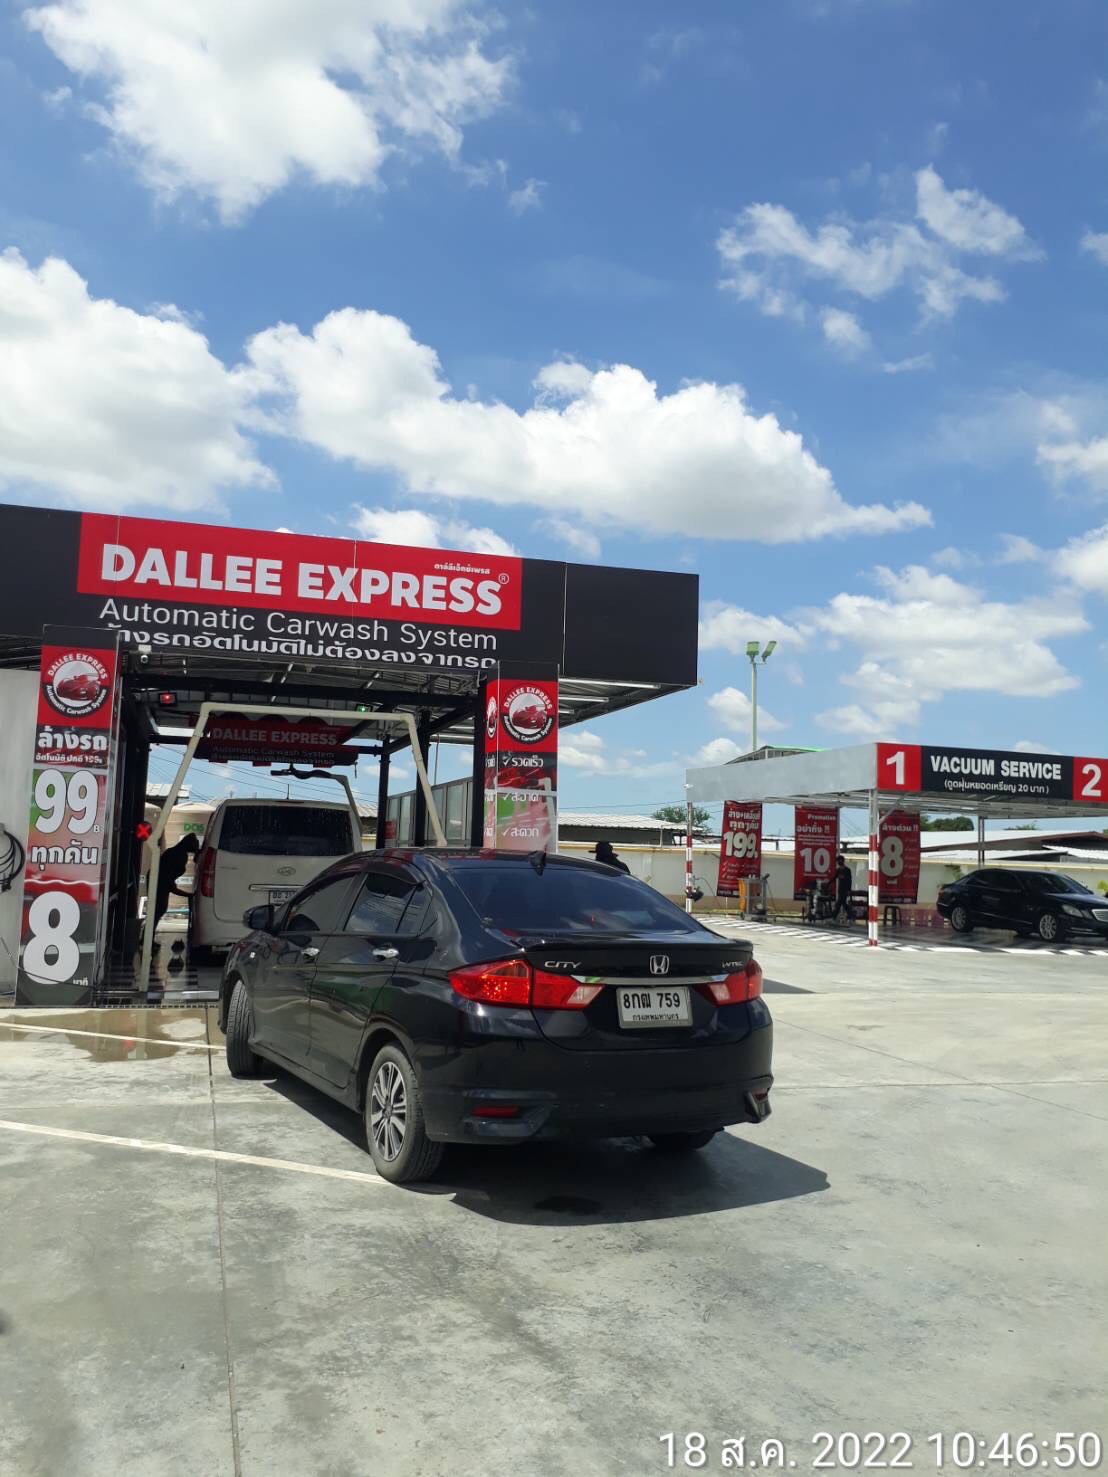 Dallee Express ล้างรถ 8 นาที ว้าว!! รวดเร็ว ทันใจ ตอบโจทย์สุดๆ